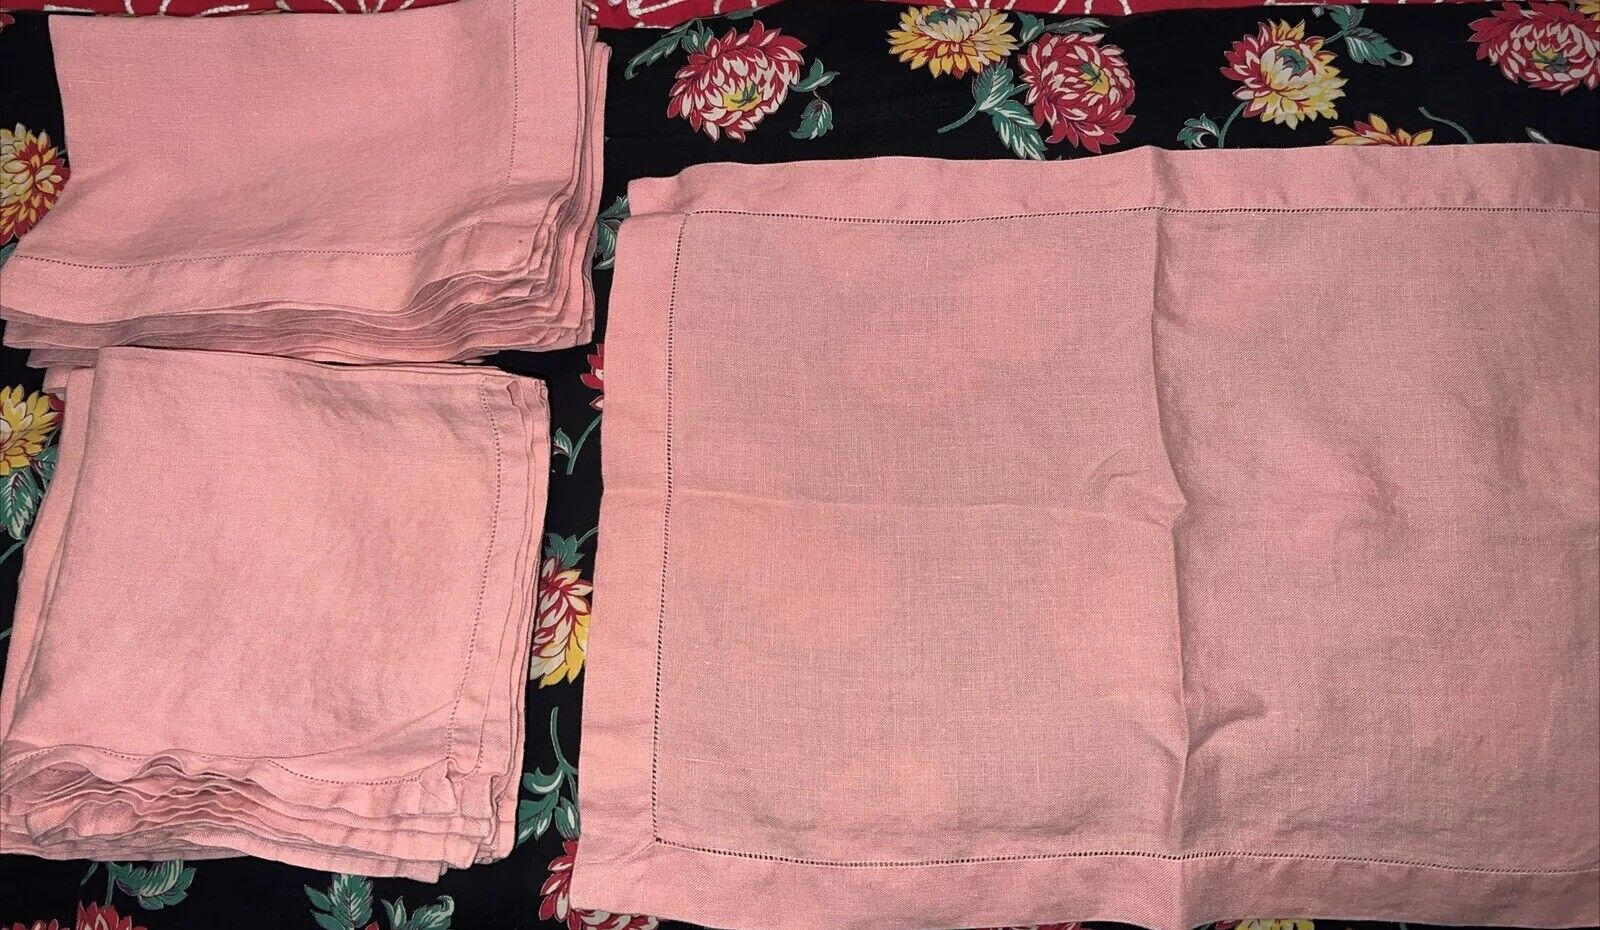 Vintage Plain Pink Linen Hemstitched 8 Placemats 8 Napkins Pink